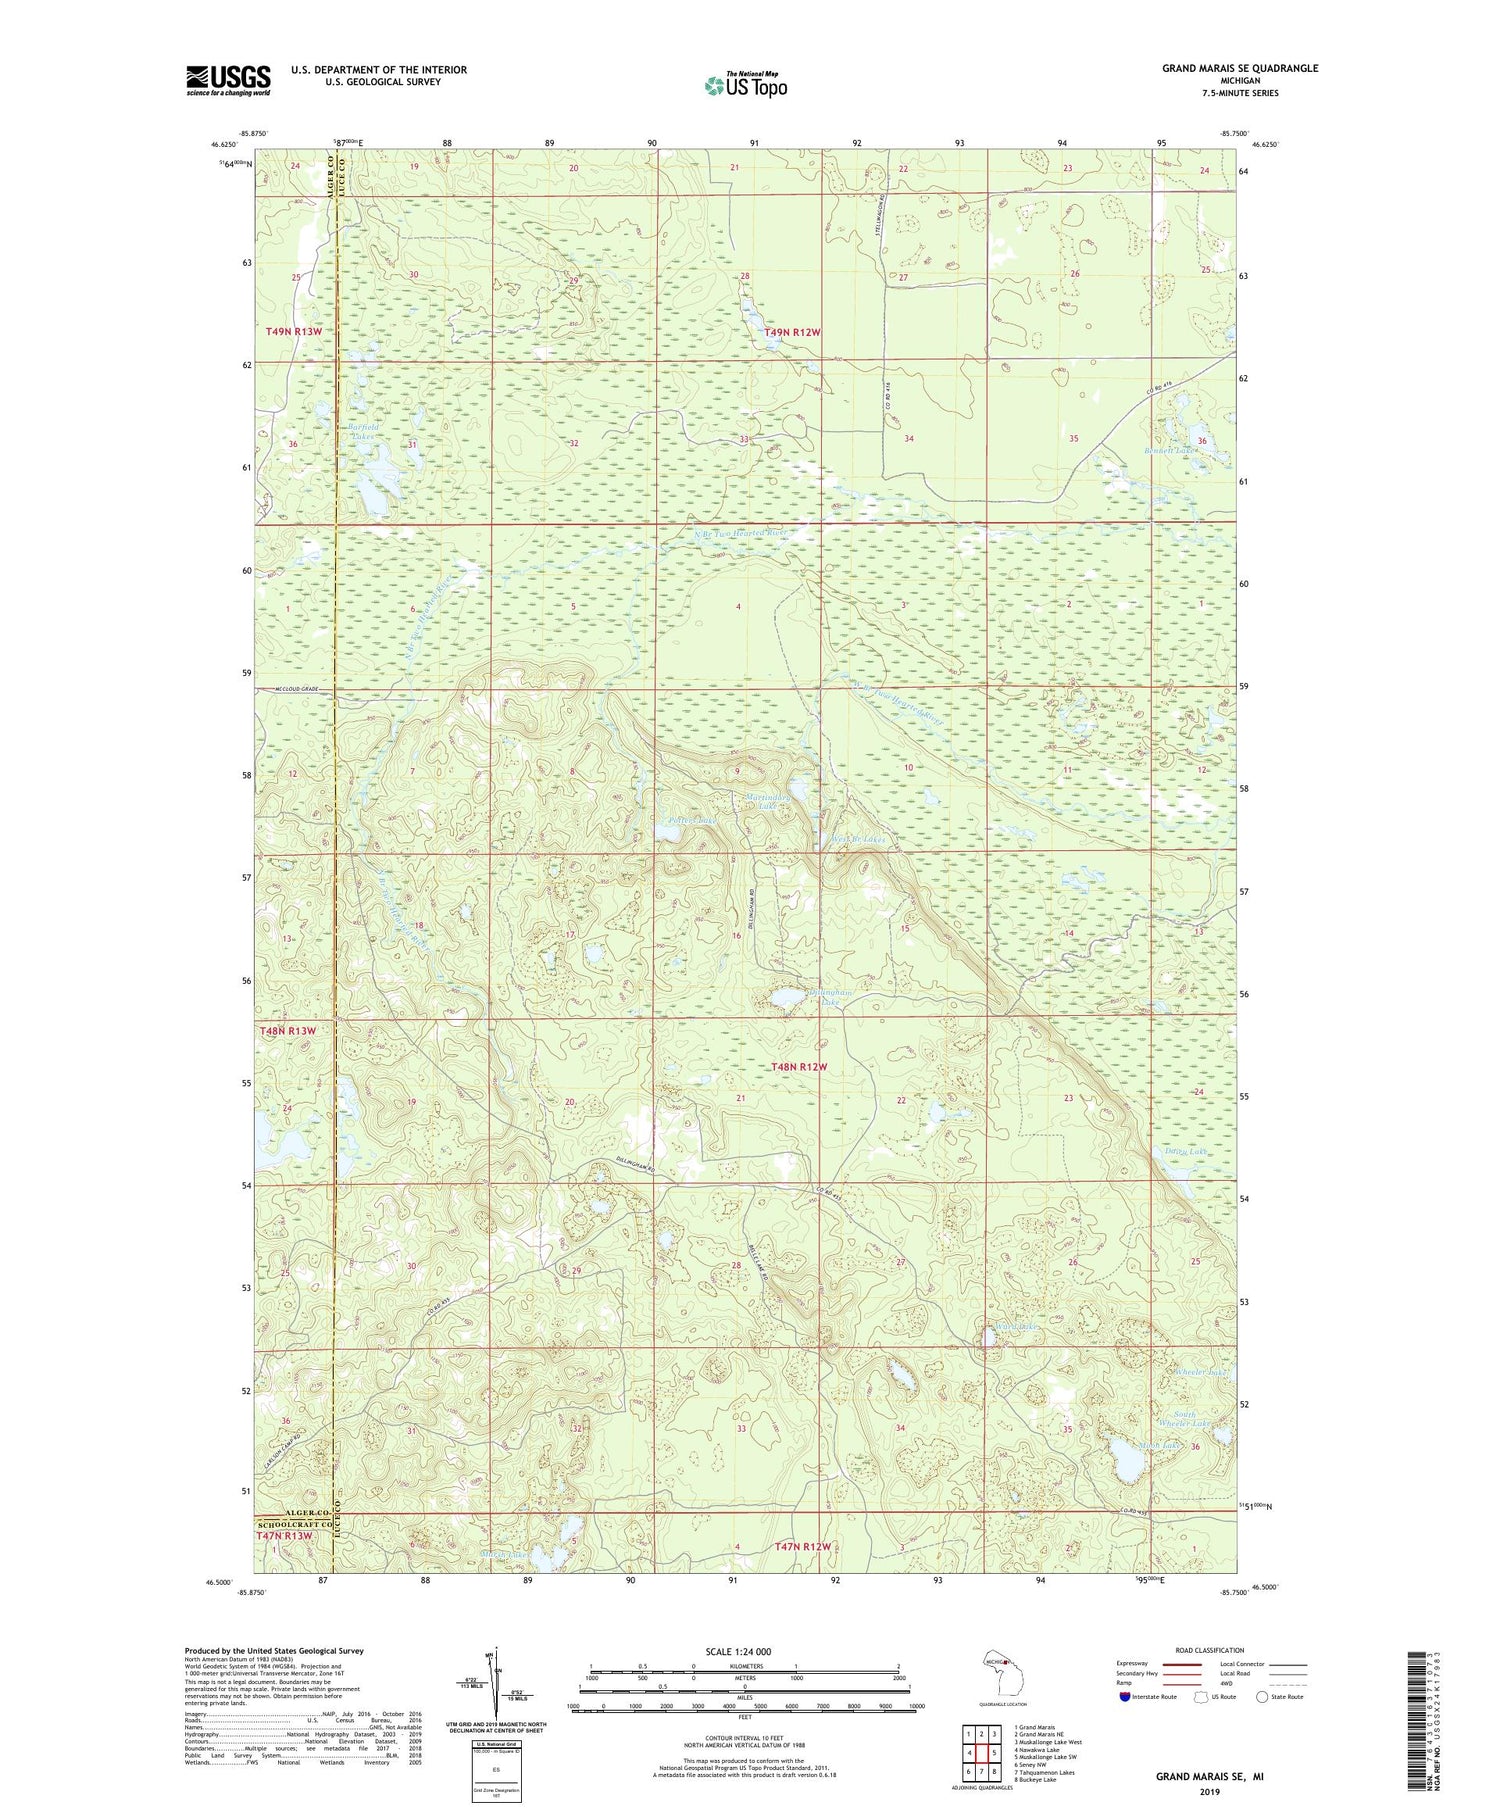 Grand Marais SE Michigan US Topo Map Image